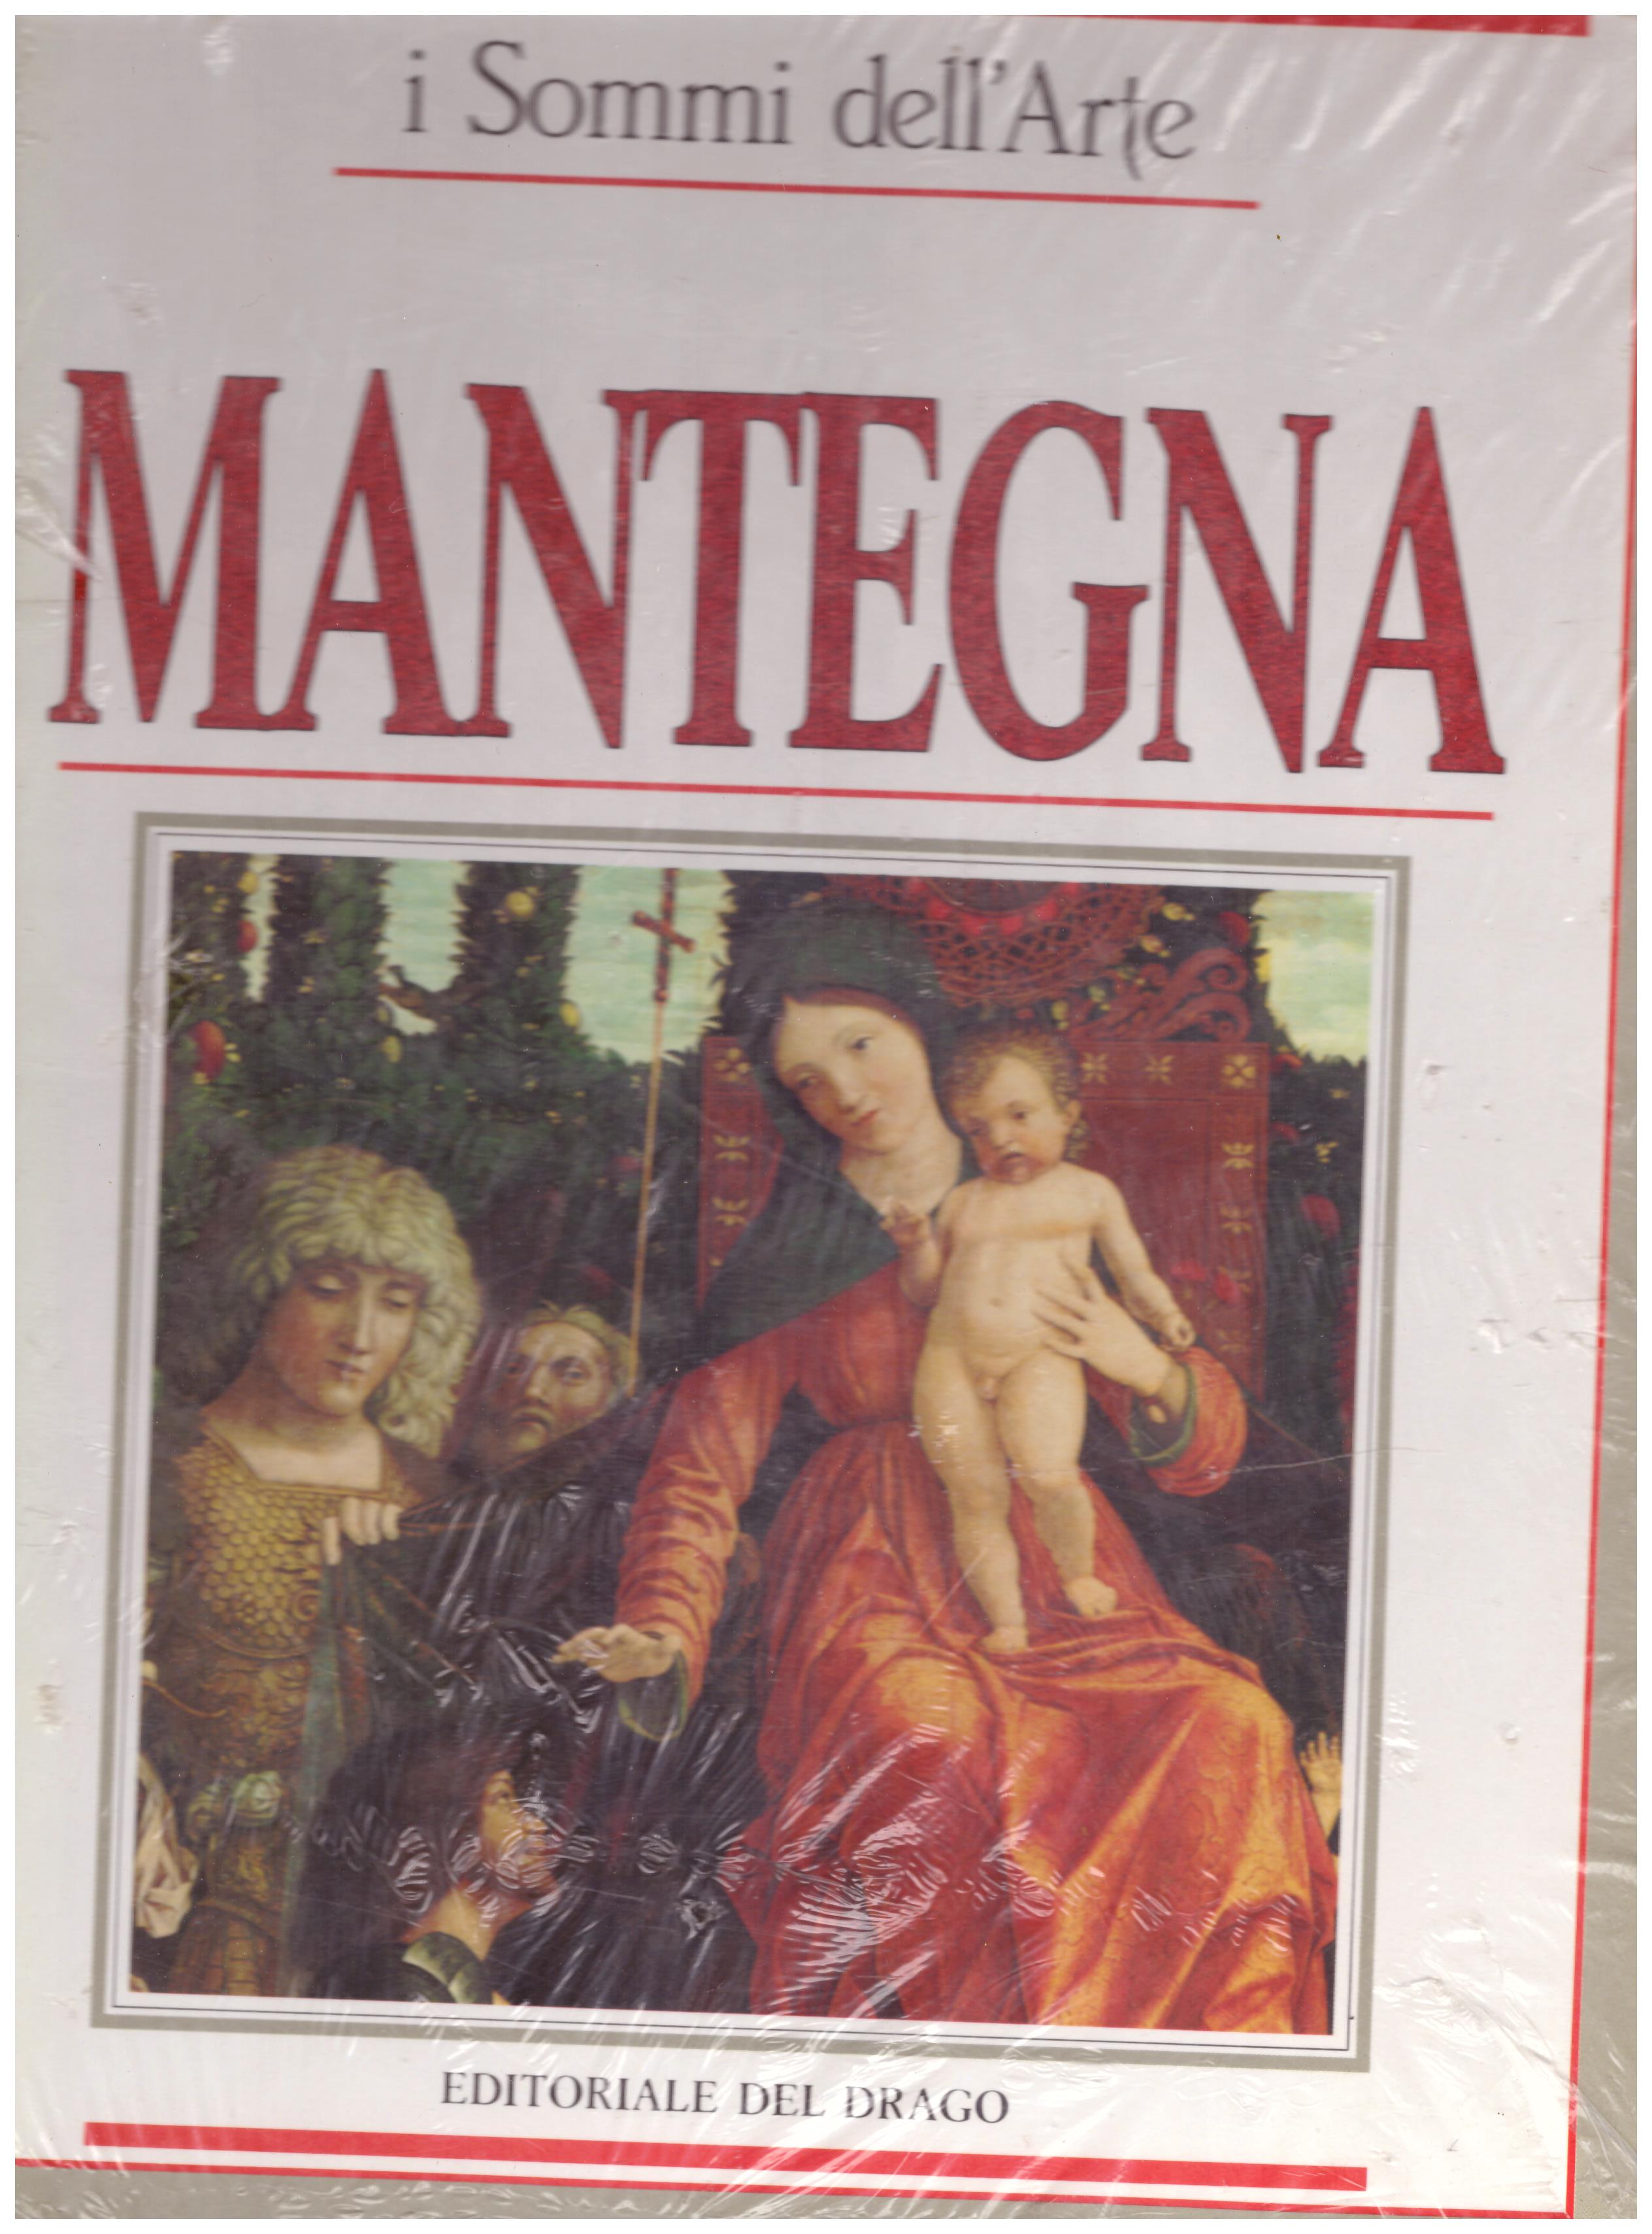 Titolo: I sommi dell'arte, Mantegna Autore: AA.VV.  Editore: Editoriale del drago